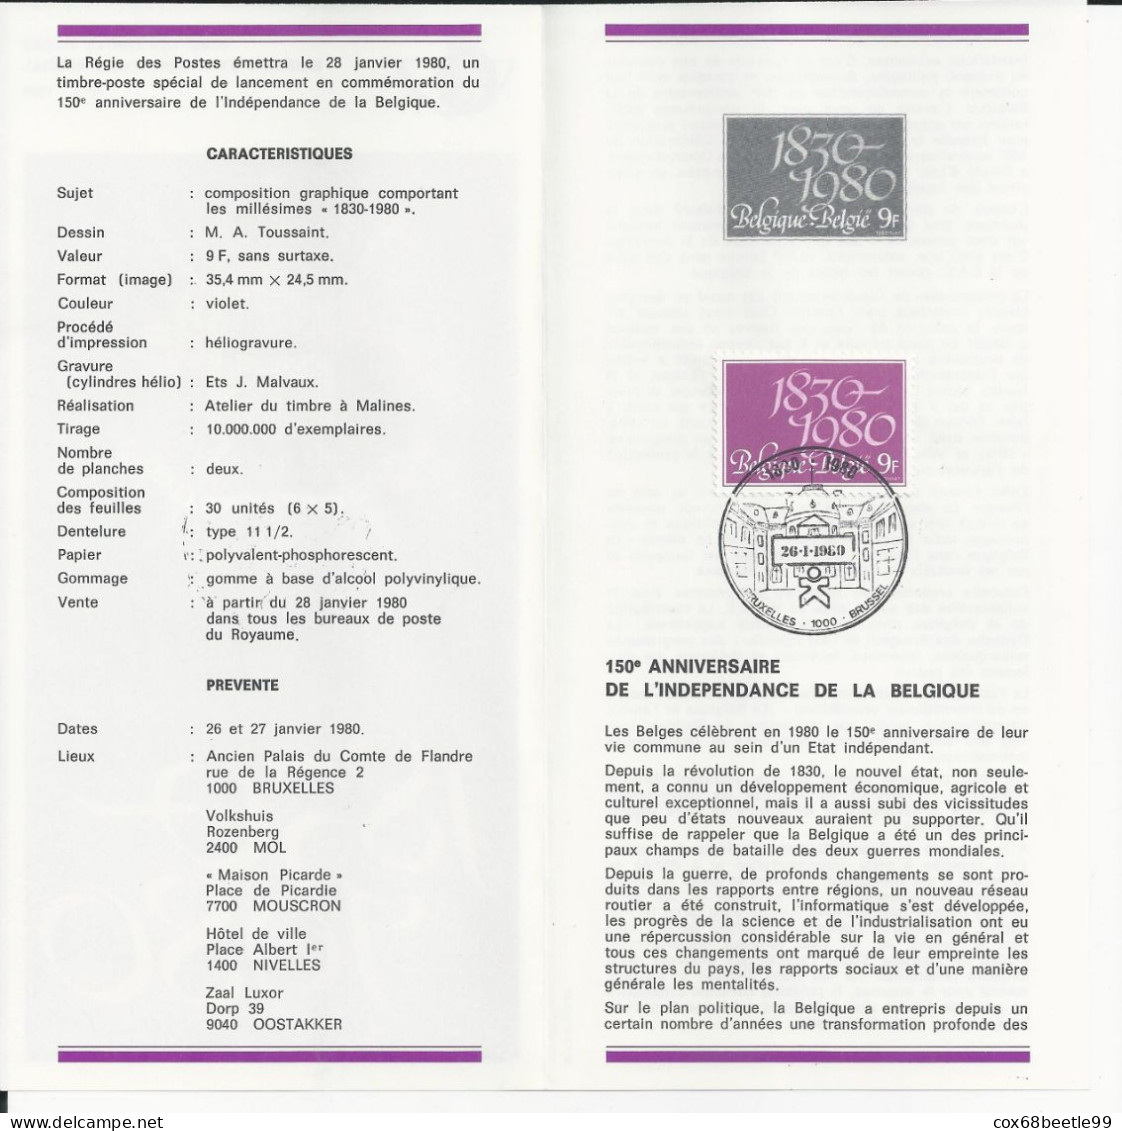 Belgique Feuillet De La Poste 1980-1 FDC Cob 1961 150 Ans 1930-1980 26-01-1980 BRUXELLES - Post Office Leaflets